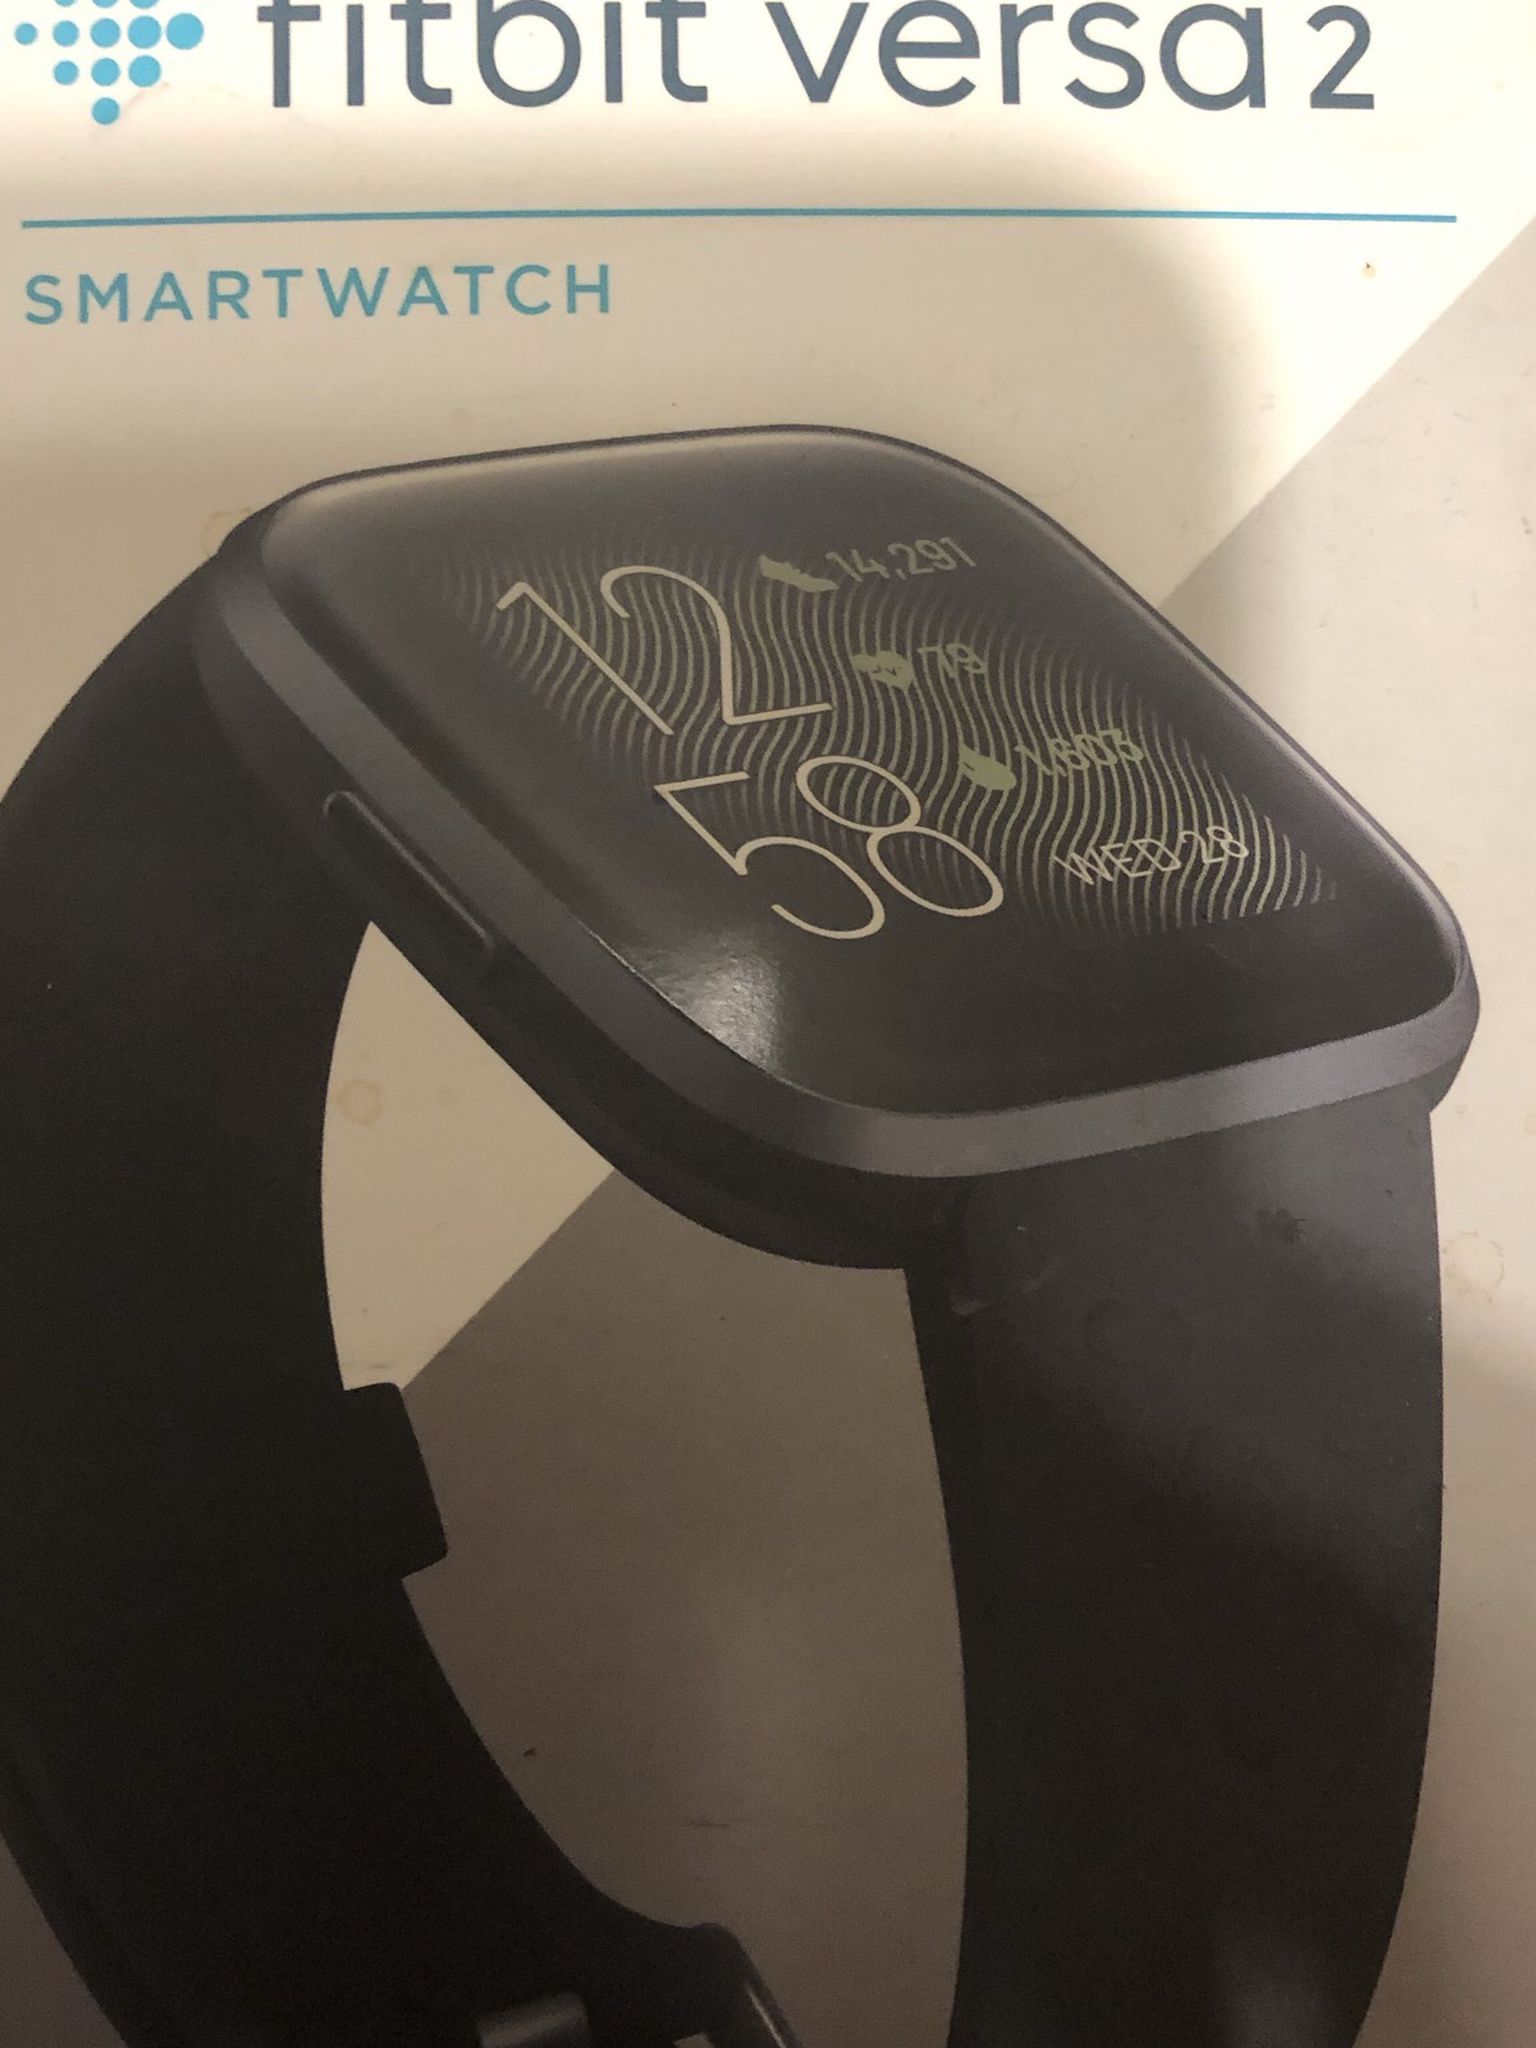 FitBit Versa 2 Smartwatch Black